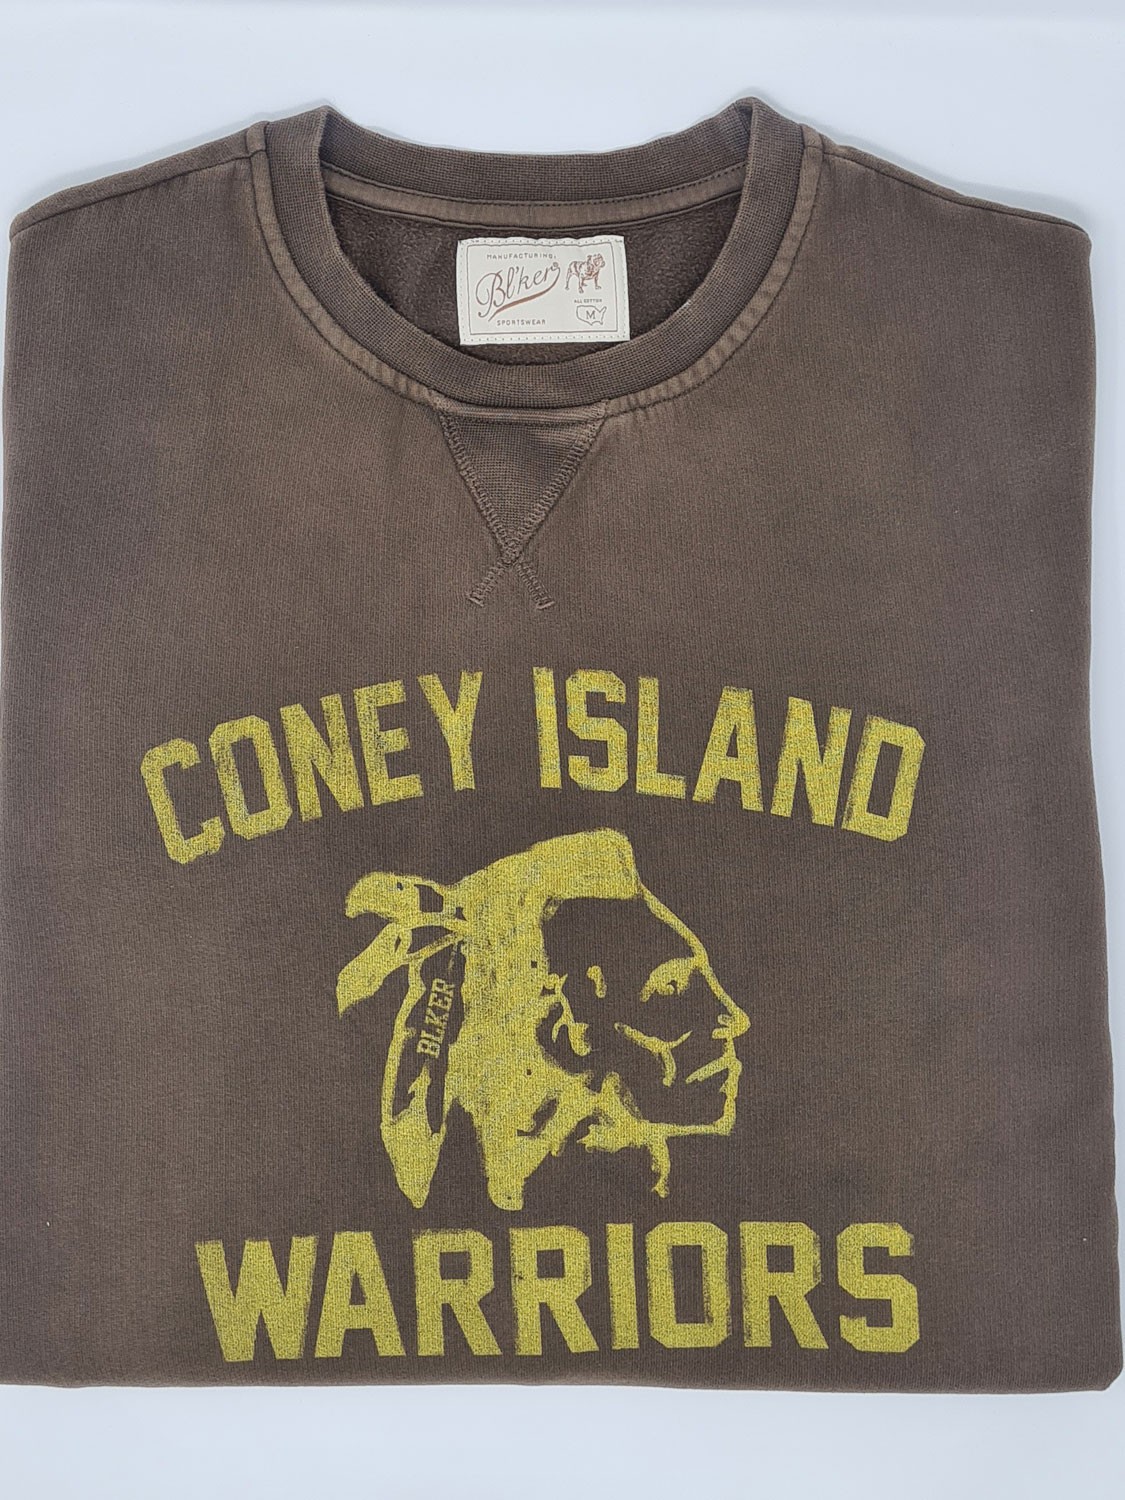 Bl'ker Men's Sweatshirt Graphic Coney Island